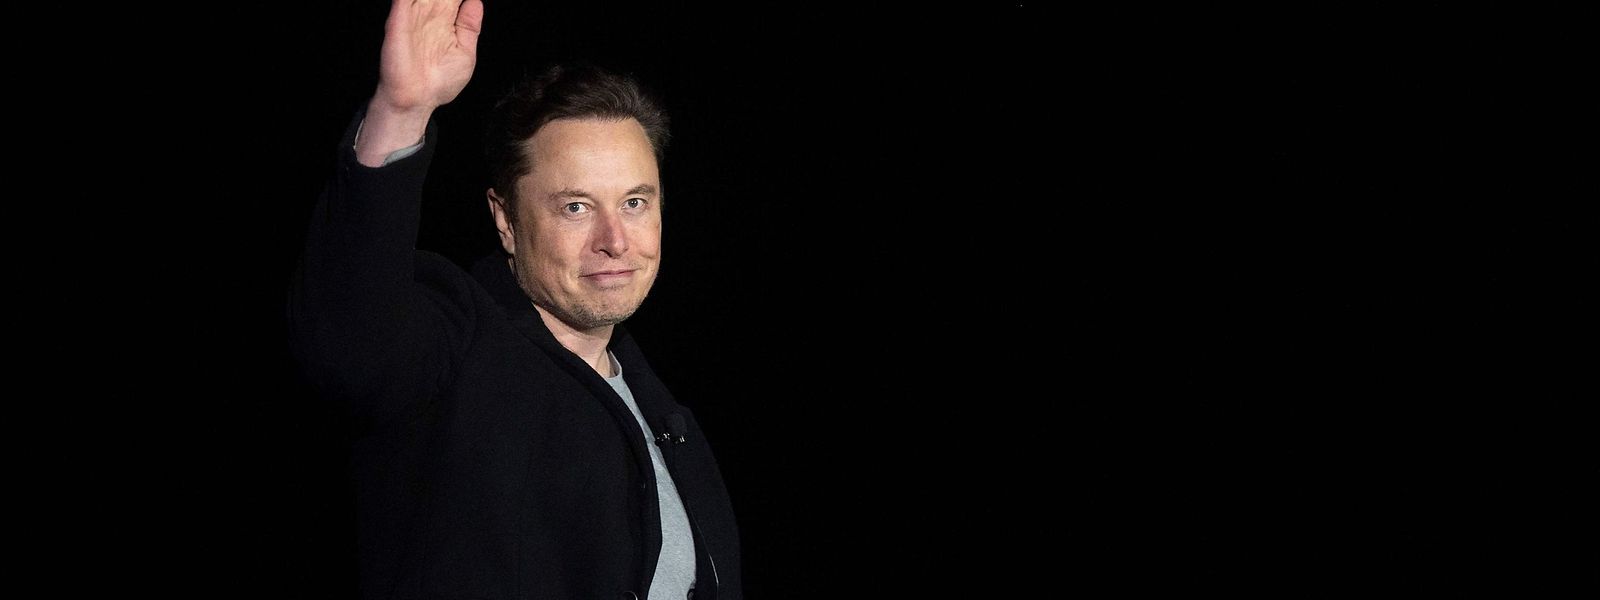 Elon Musk avait déjà annoncé vendredi dernier mettre en suspens l'acquisition de l'entreprise